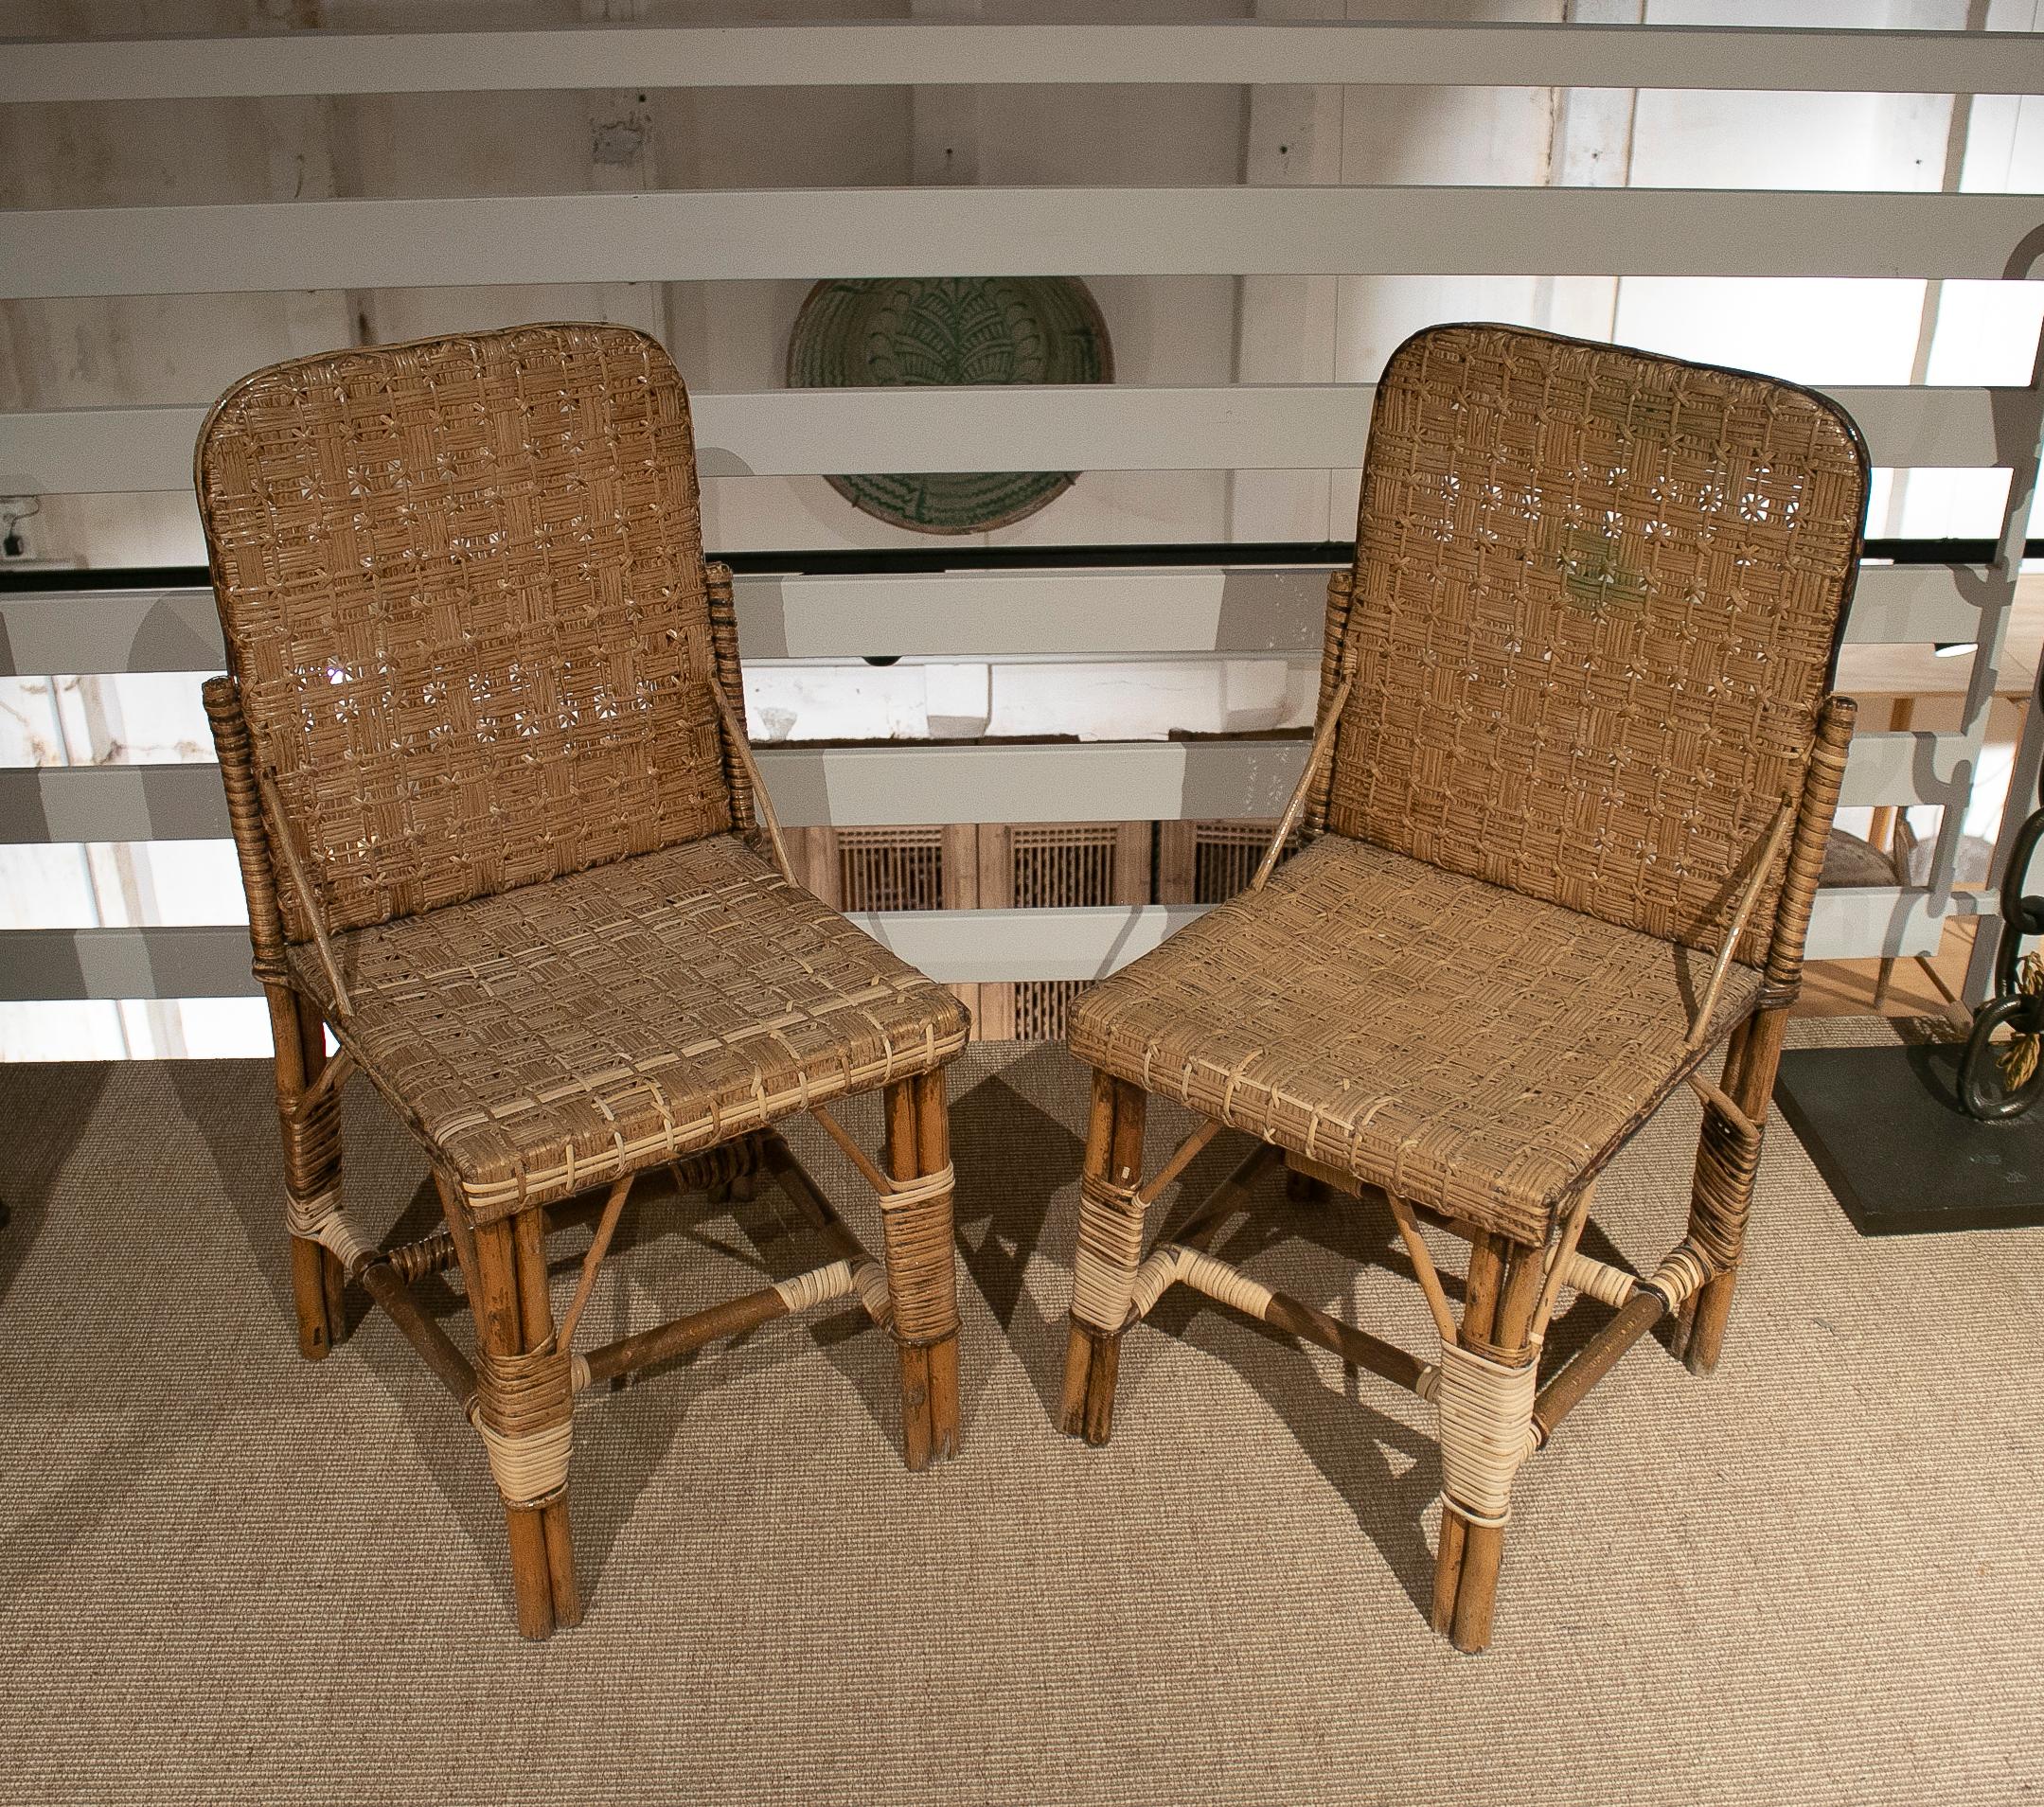 Paire de chaises espagnoles vintage des années 1950 en osier tressé à la main sur bois.